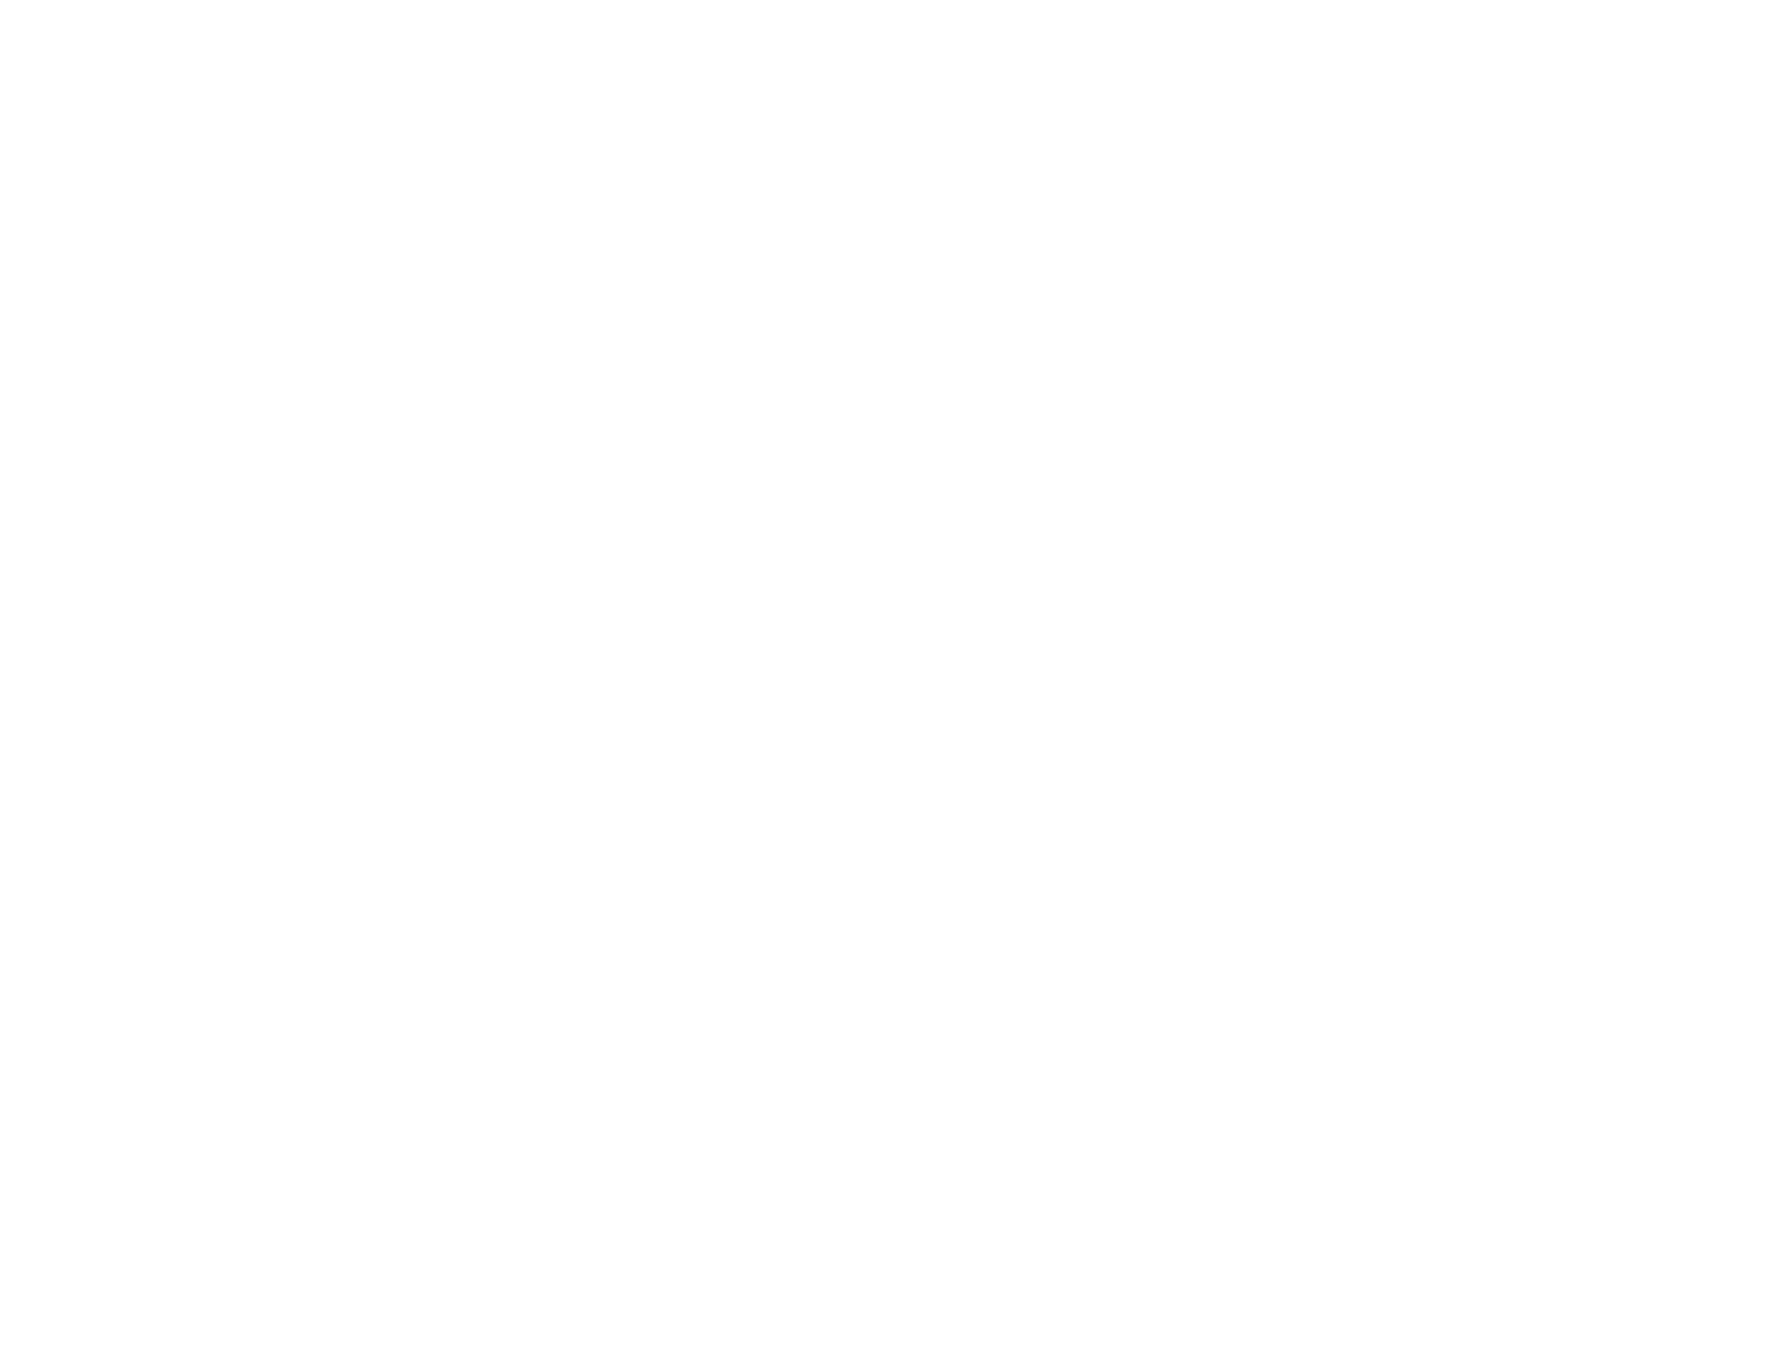 The Mark Logo